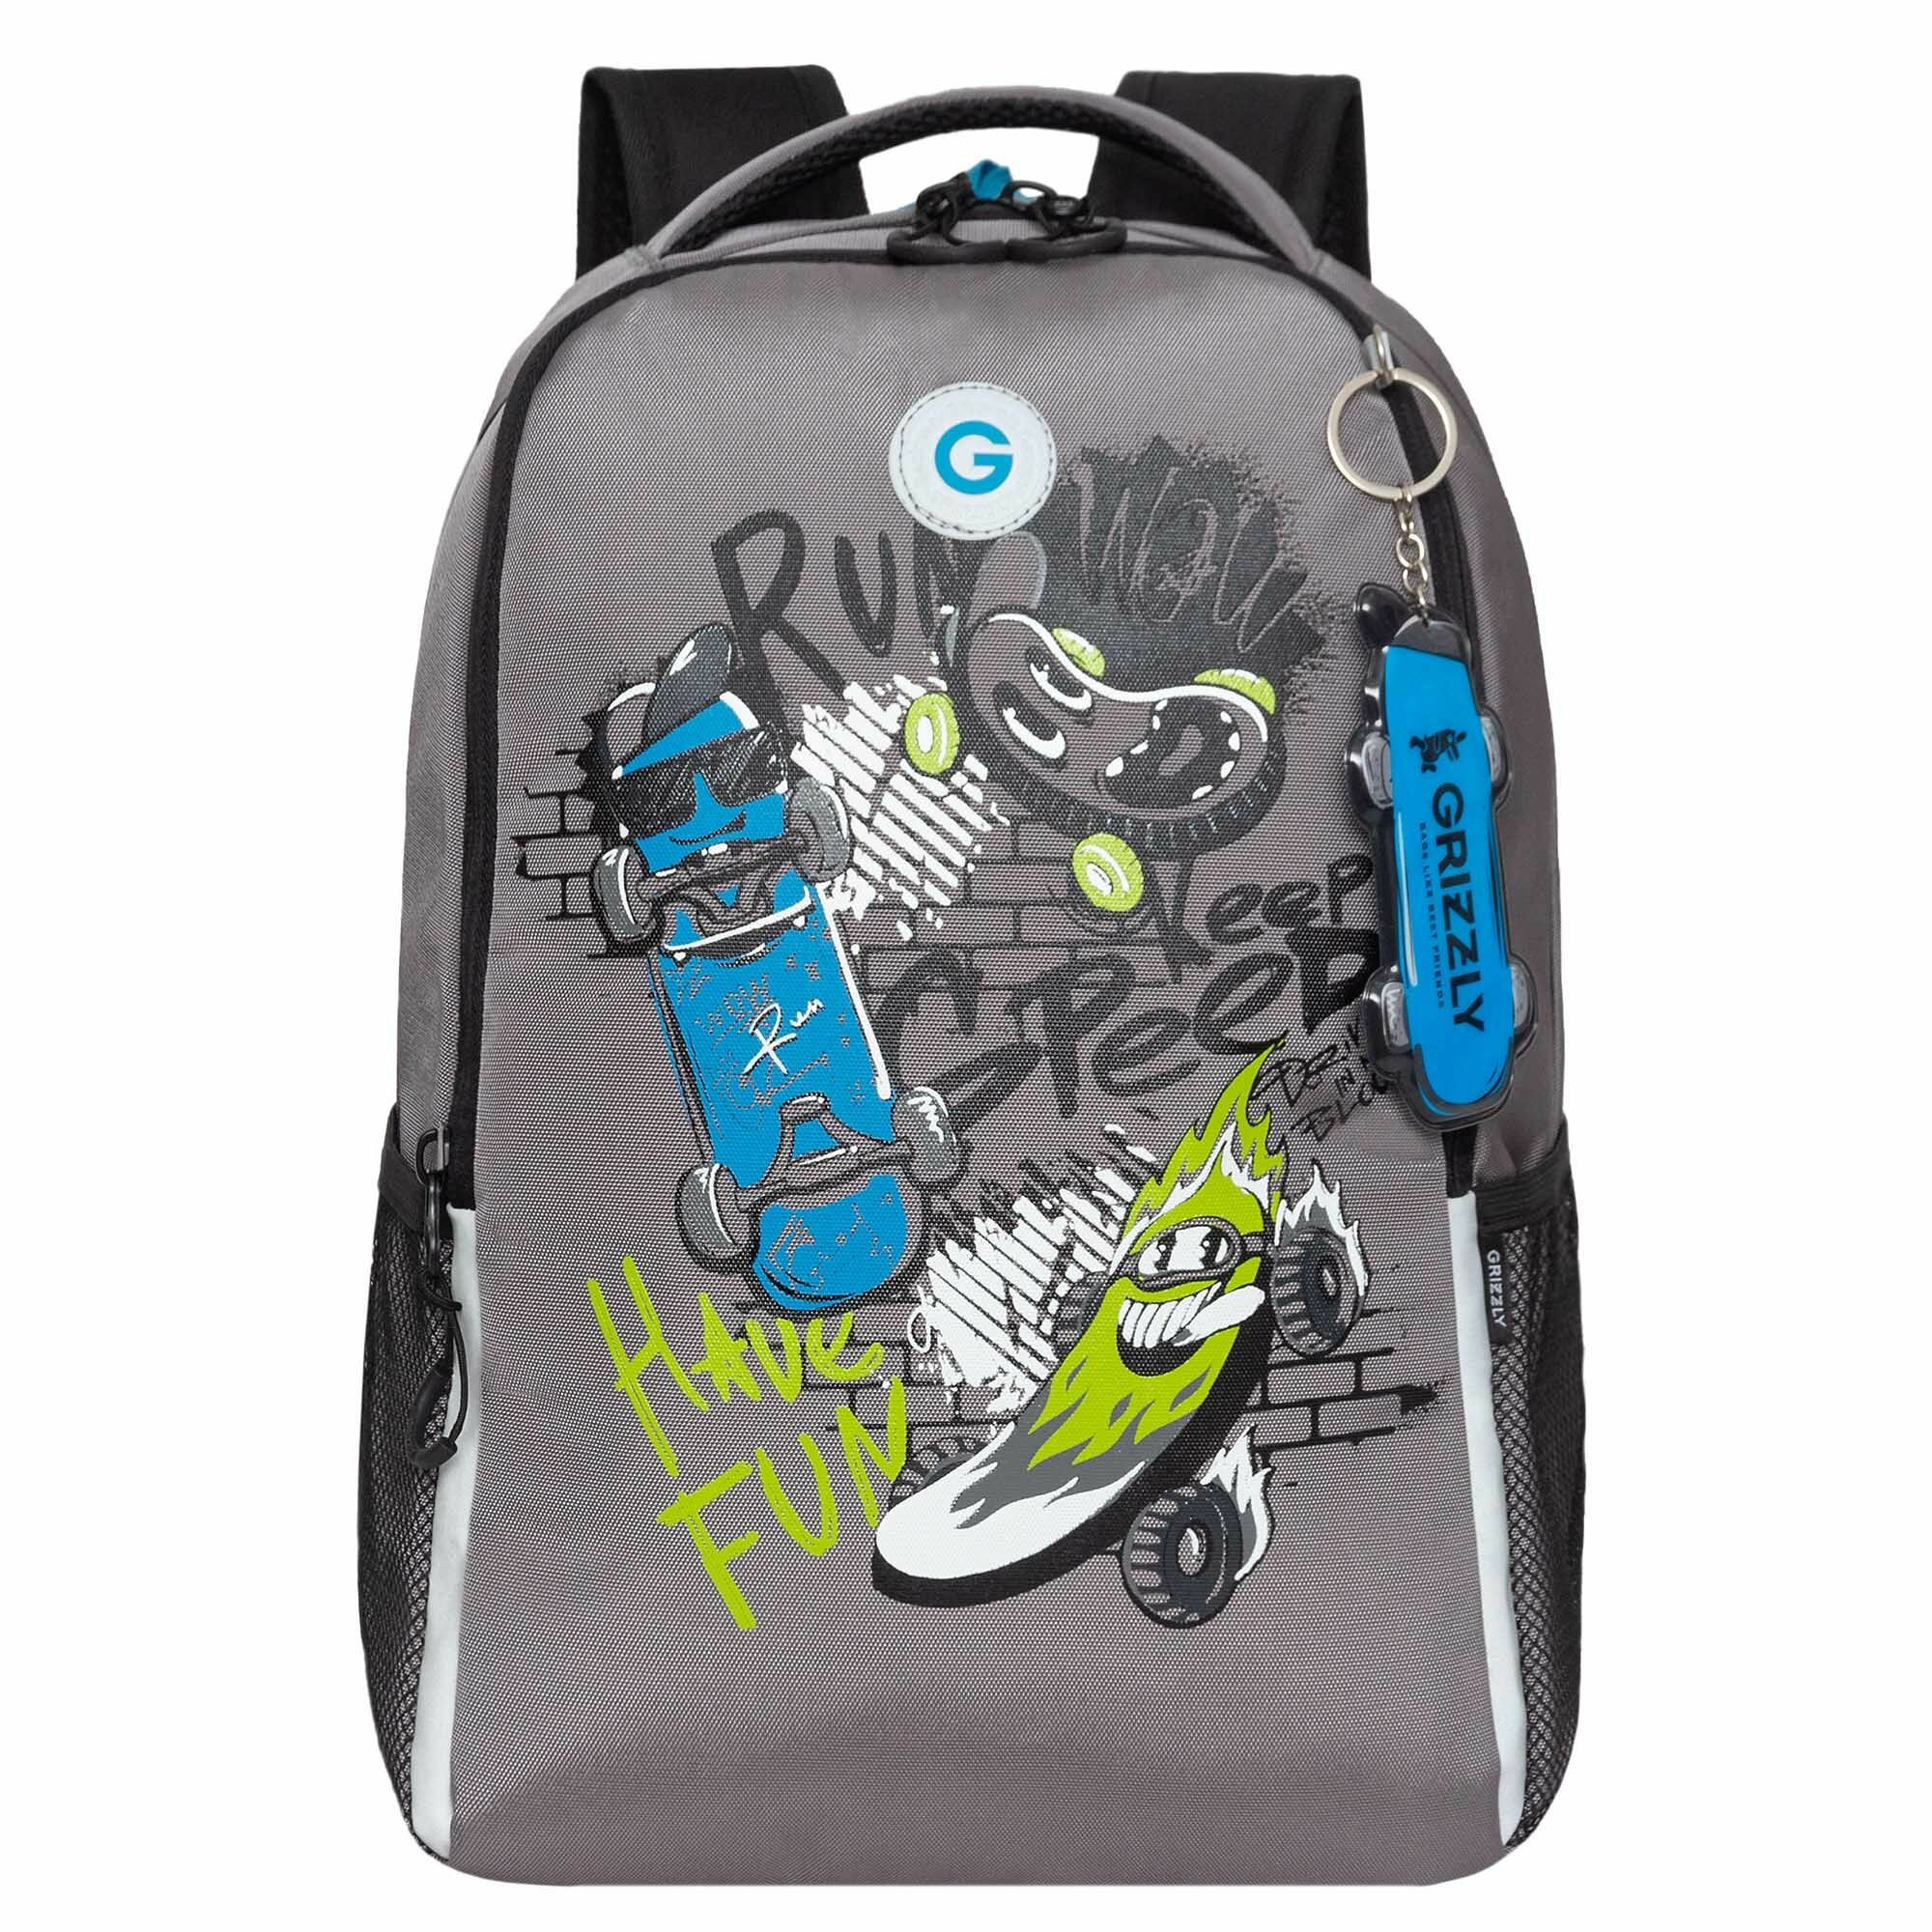 Рюкзак школьный для мальчика подростка, с ортопедической спинкой, для средней школы, GRIZZLY, (серый - черный)